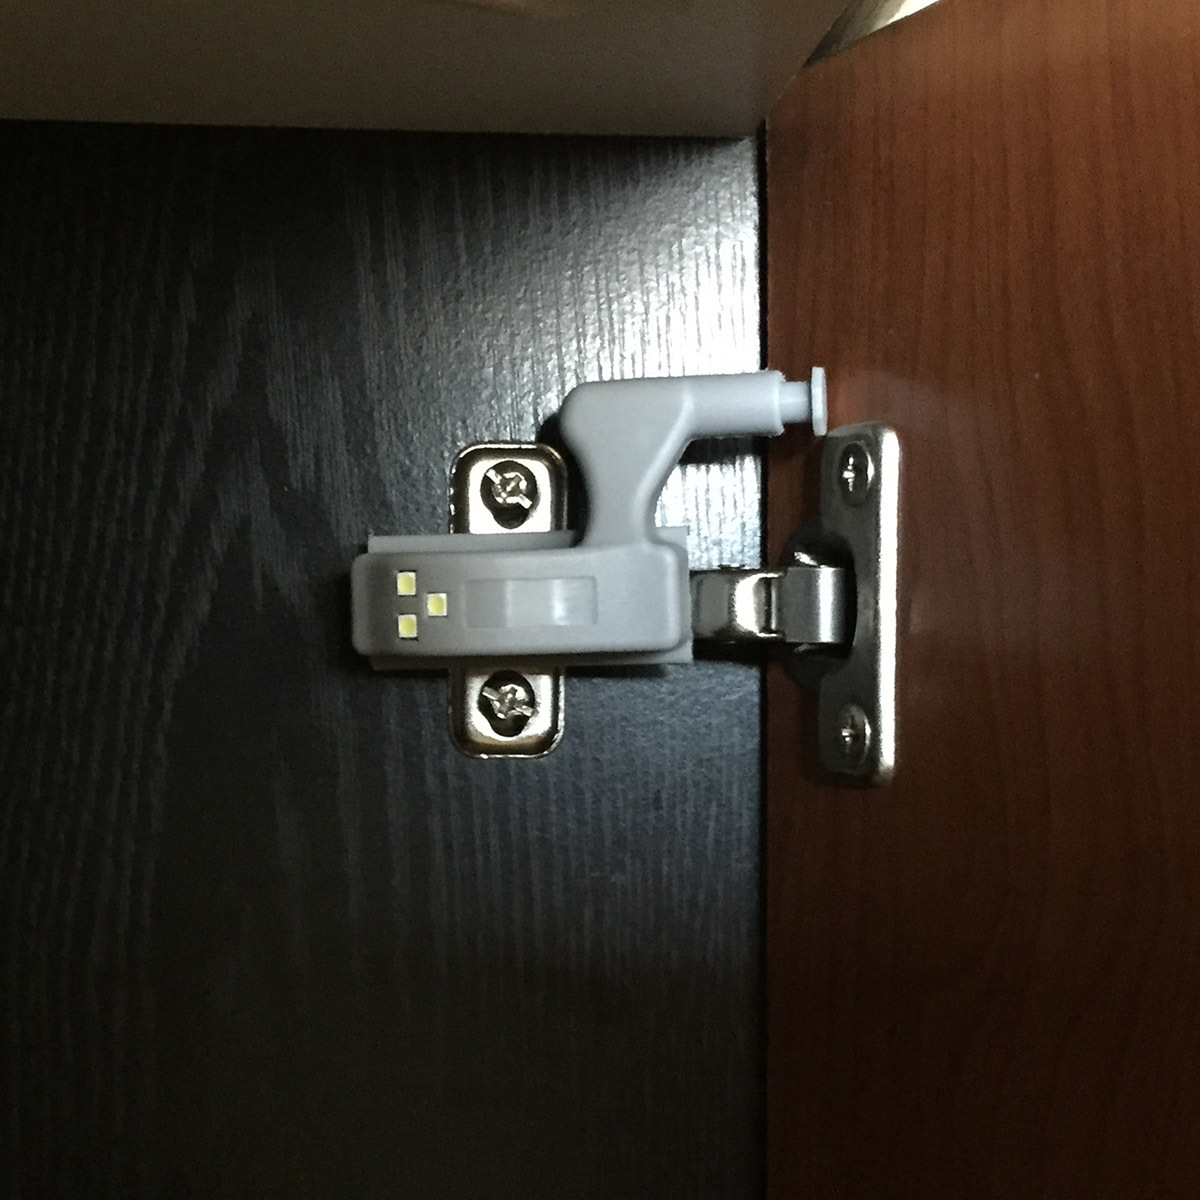 датчик на открывание двери шкафа